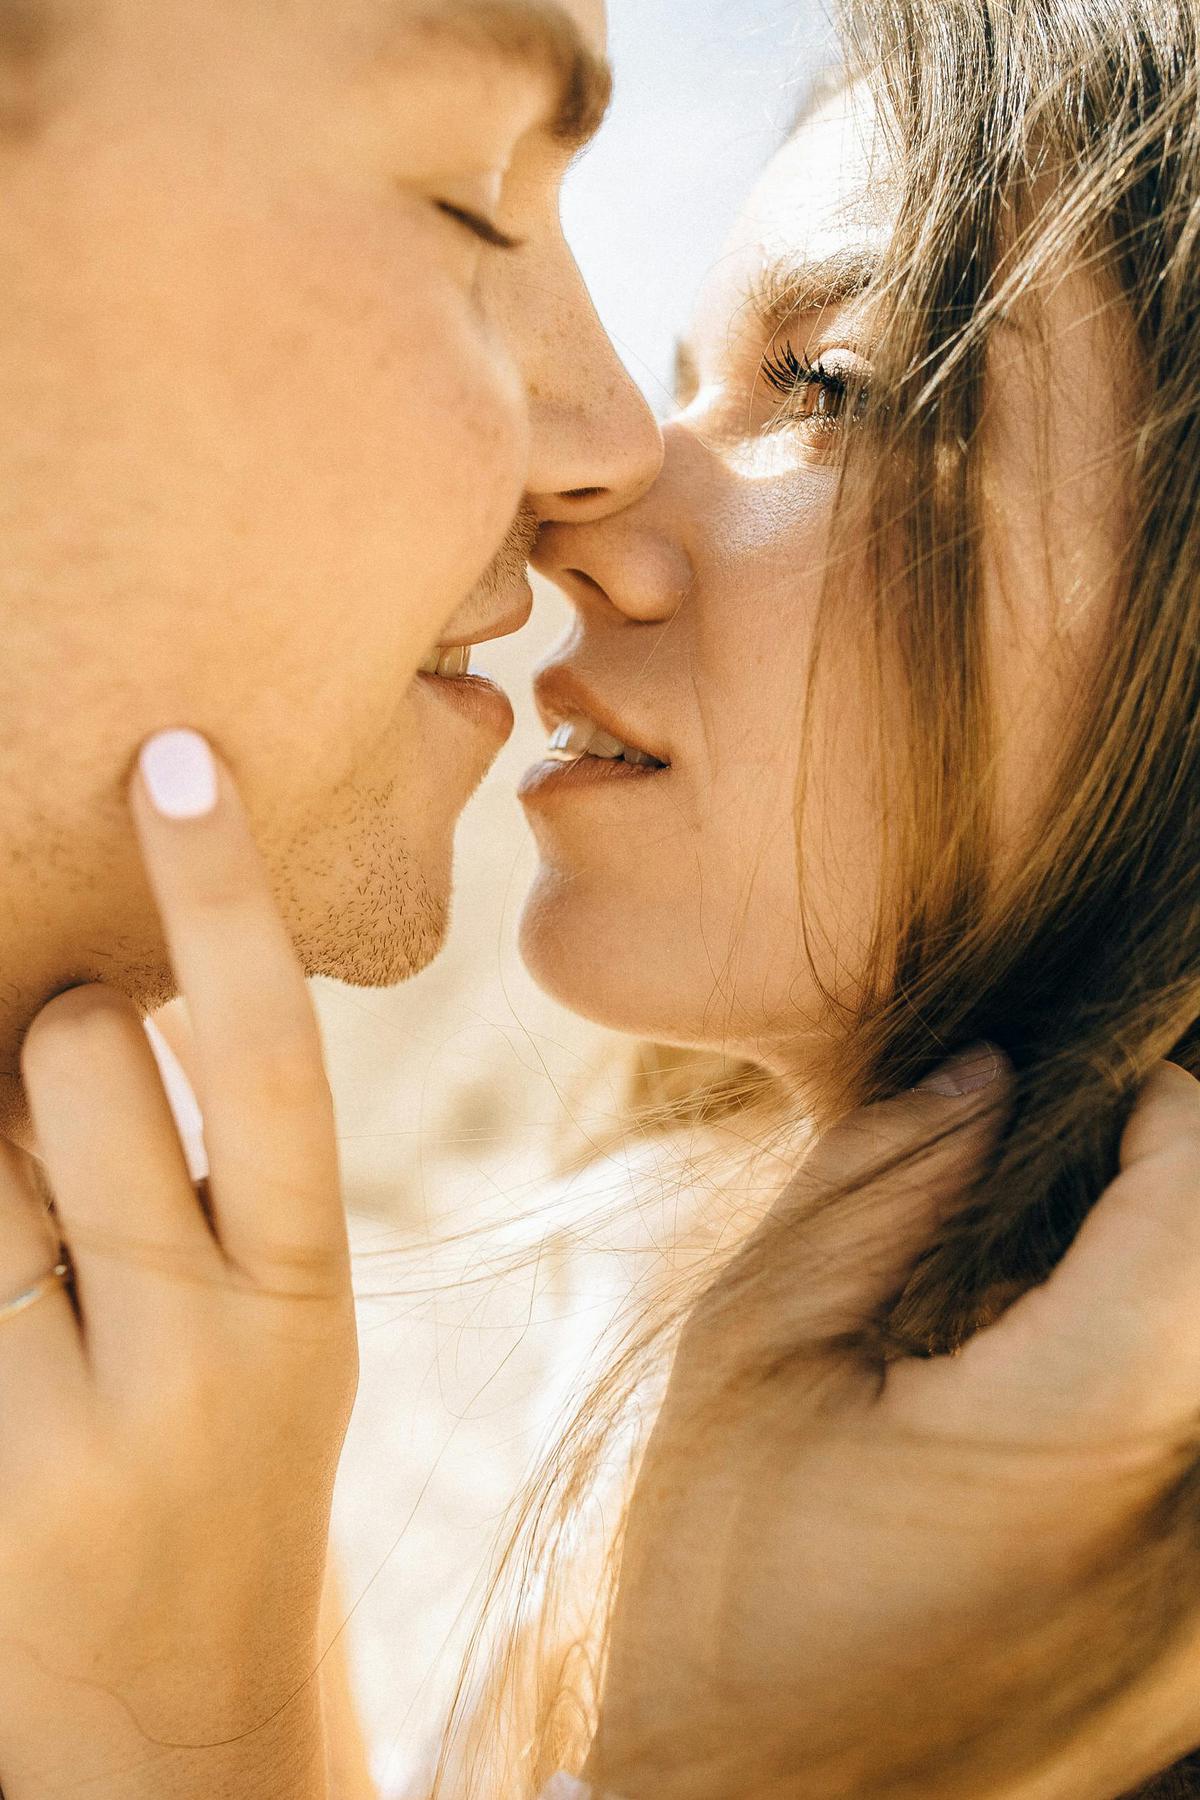 Conexión sexual | Descubre las zonas erógenas de tu pareja a través de señales no verbales. Fuente: Pexels